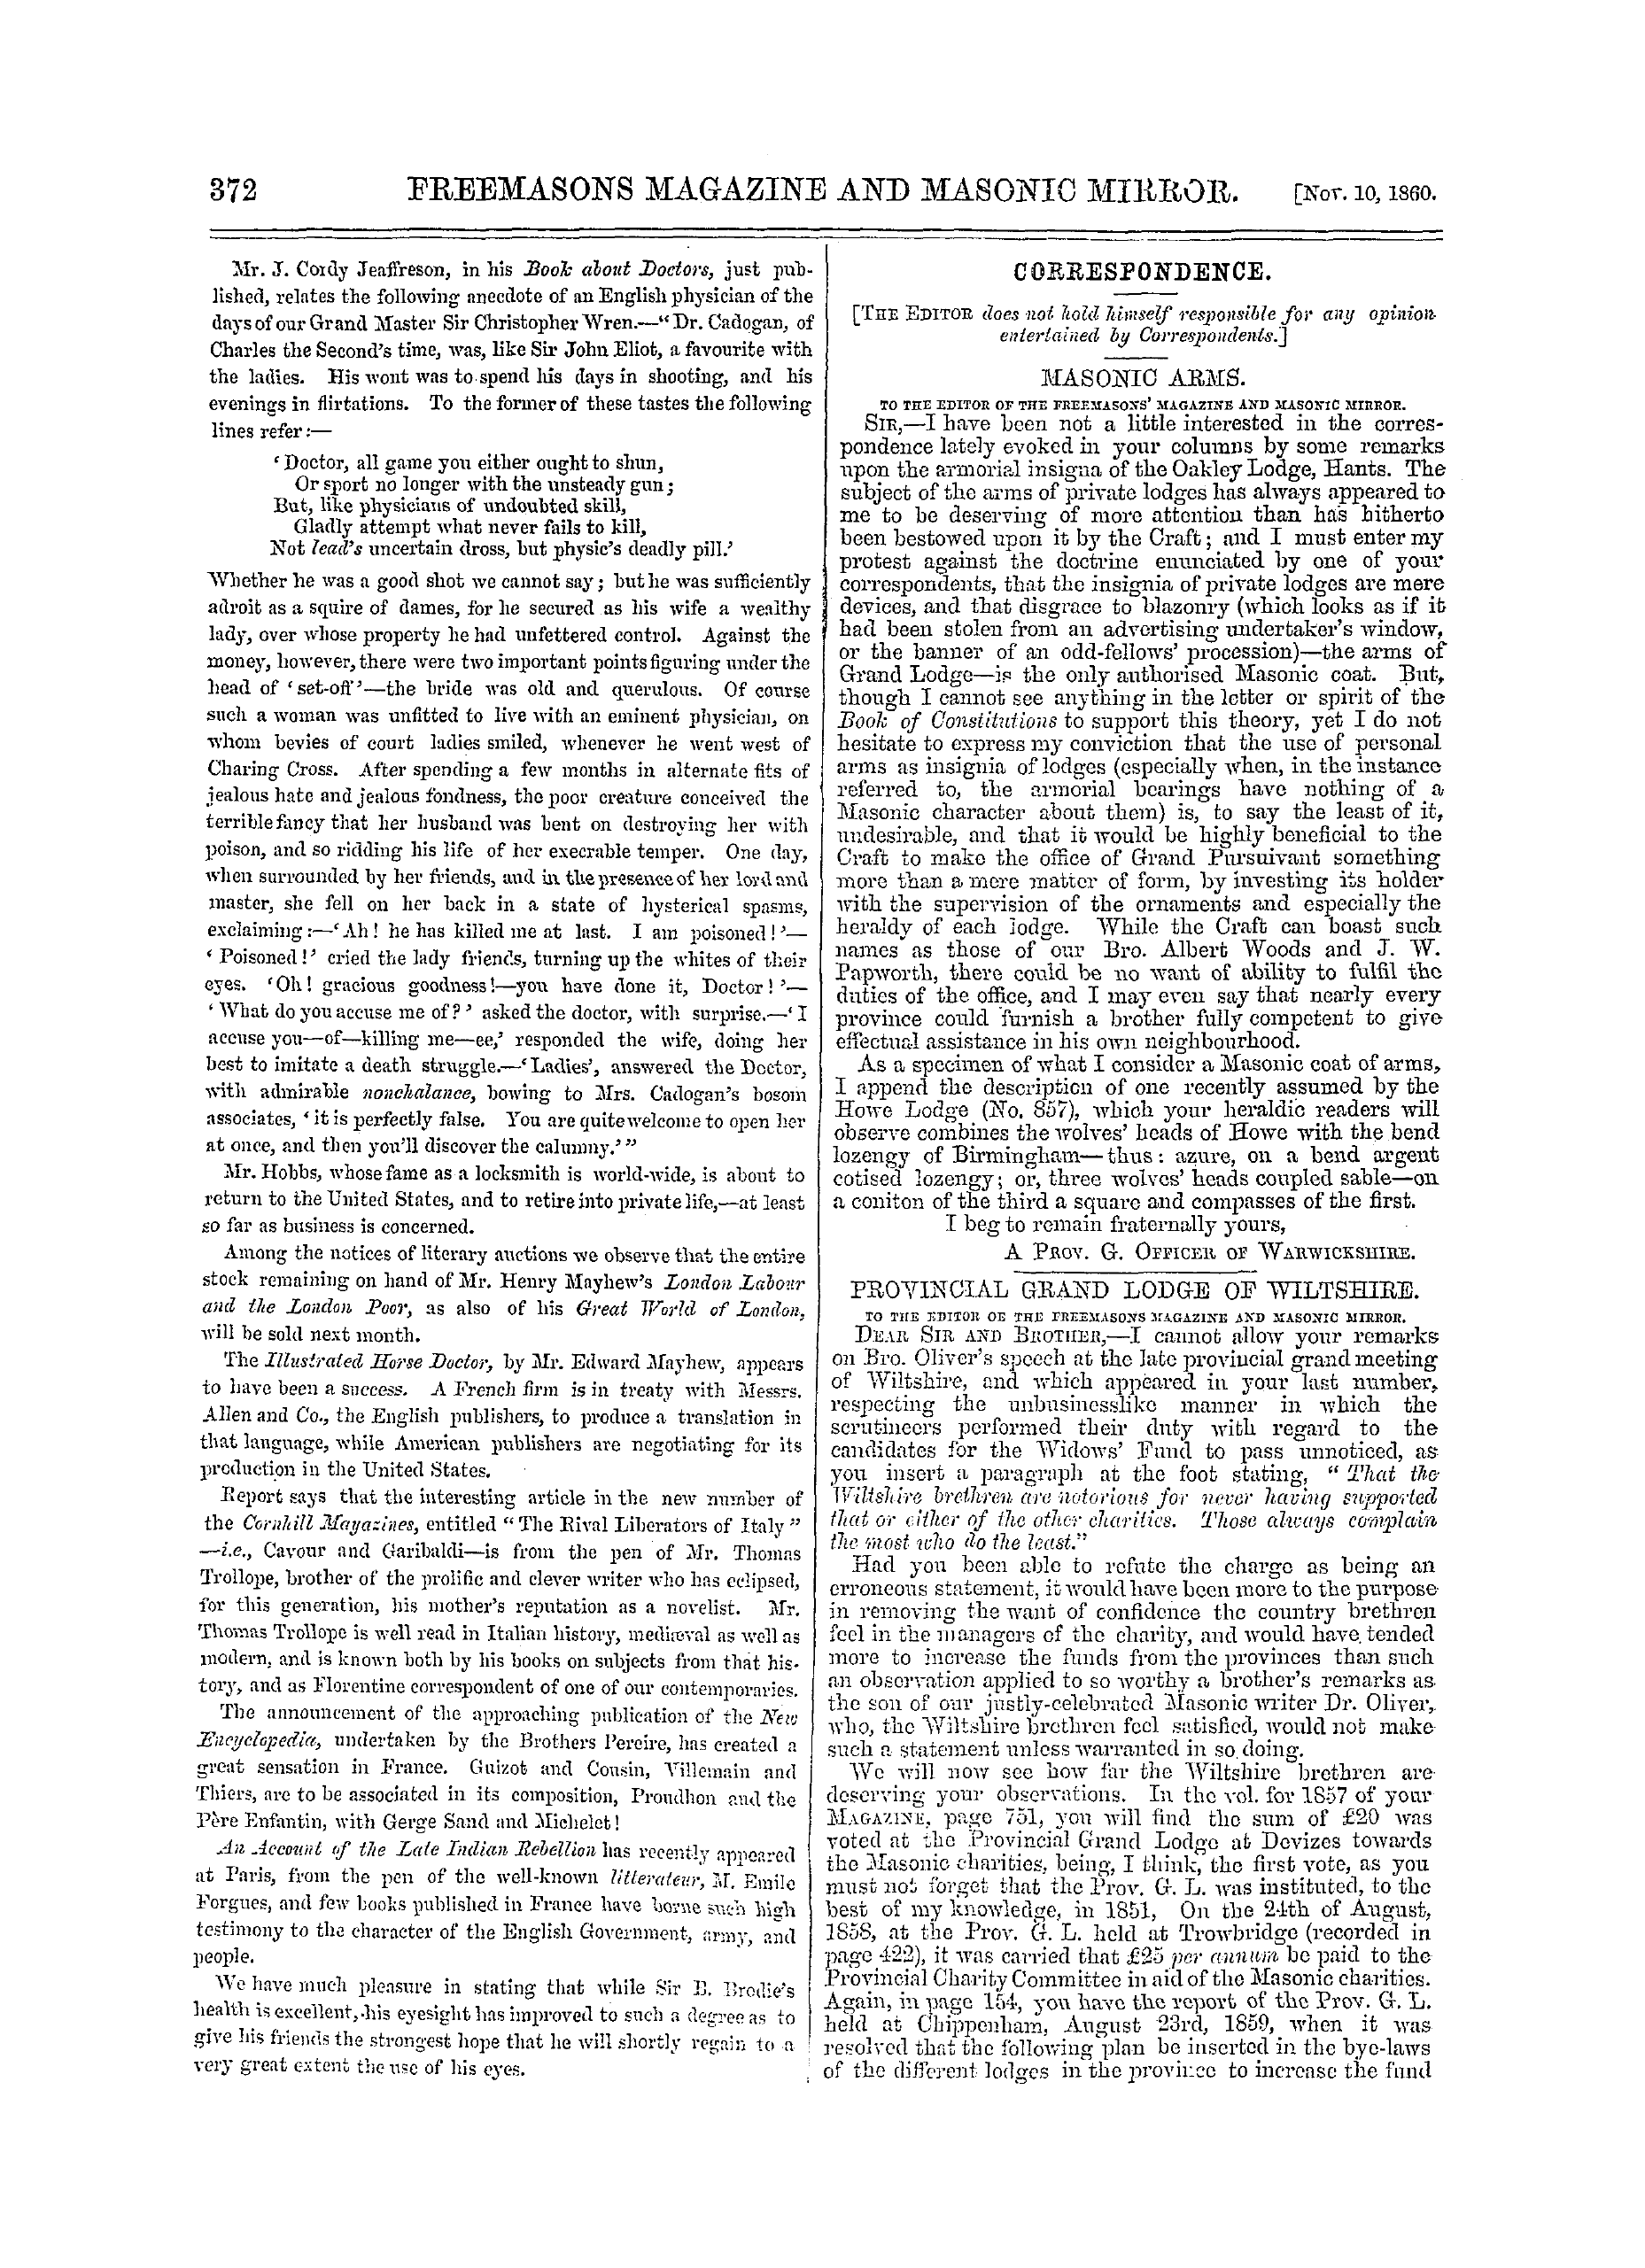 The Freemasons' Monthly Magazine: 1860-11-10: 12